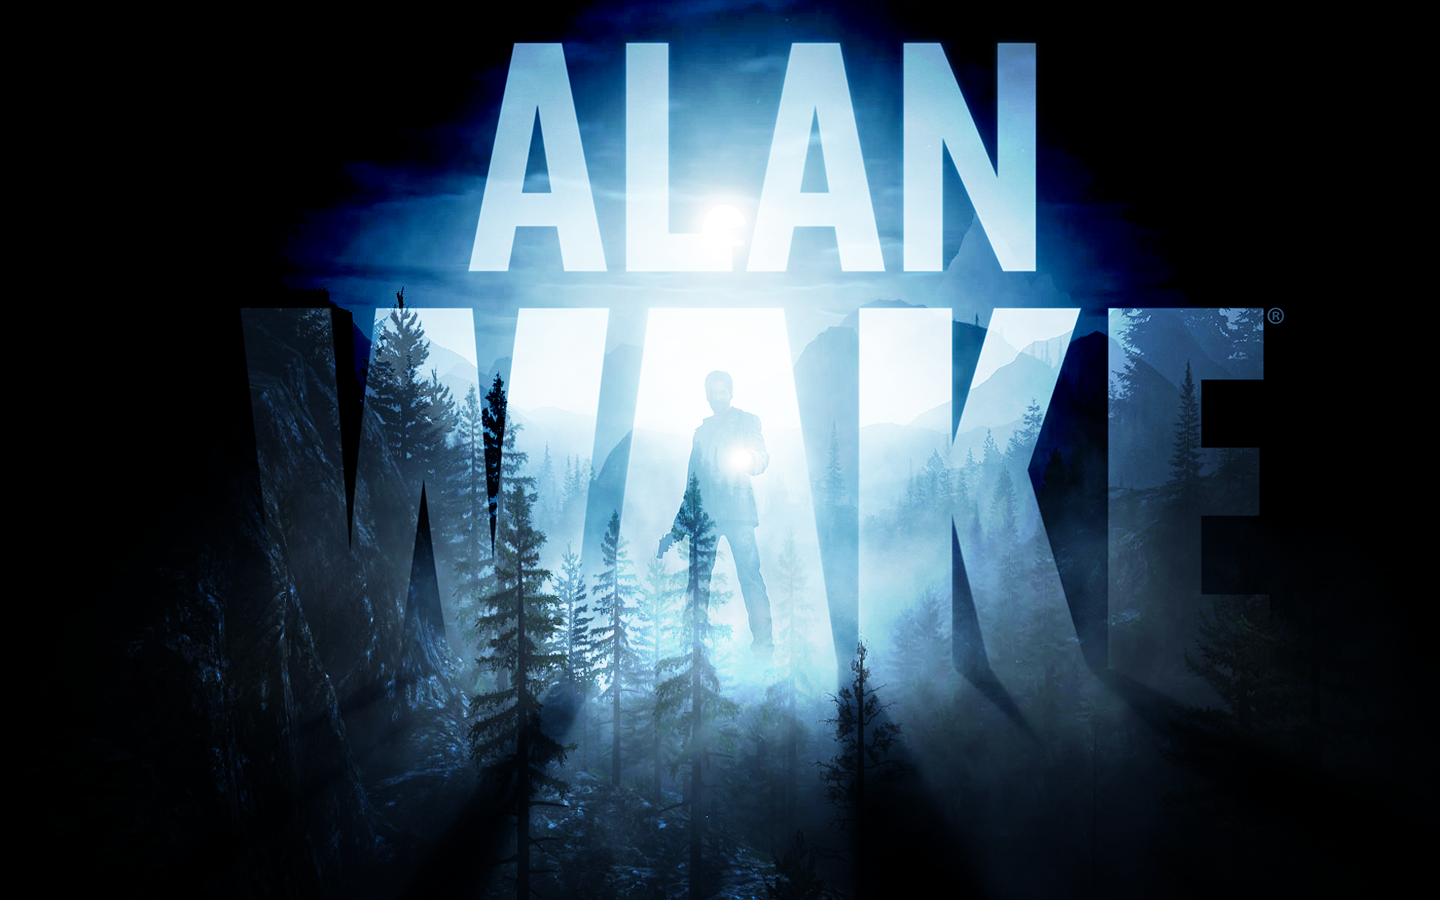 alan-wake-1